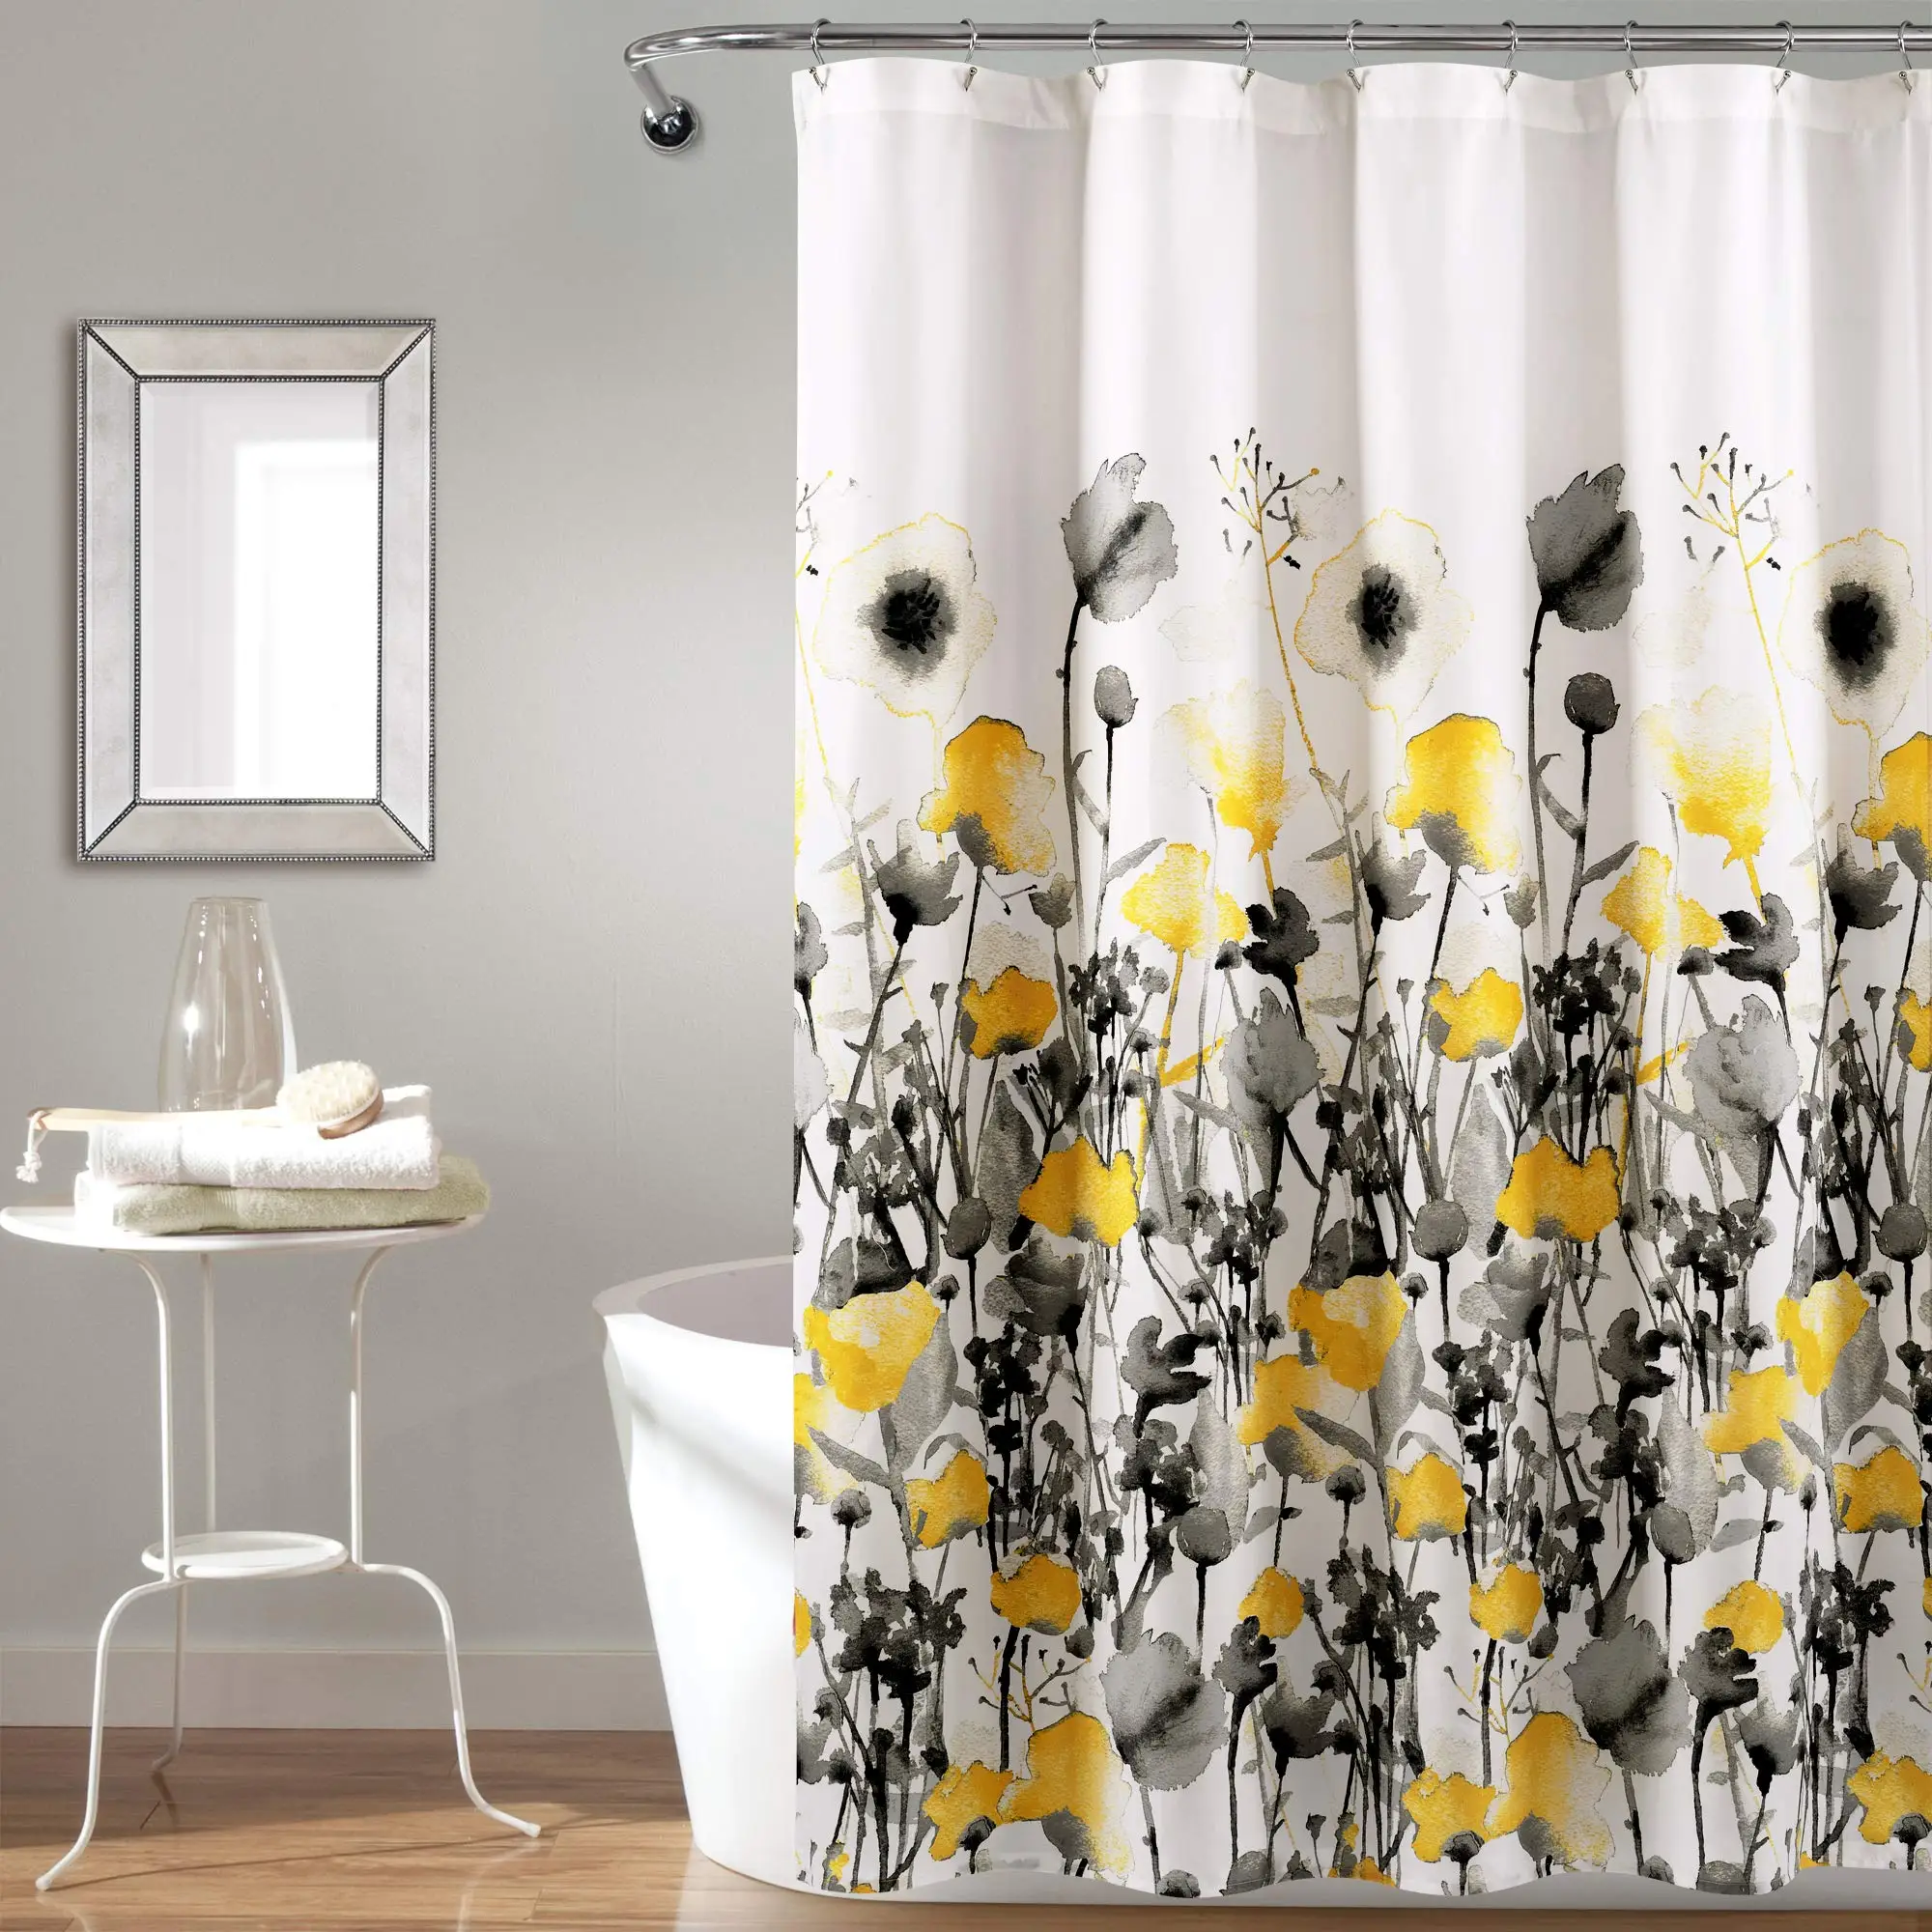 

Занавеска для душа Zuri, желтая и серая Цветочная занавеска из ткани с цветочным рисунком дизайнерские занавески для душа для ванной комнаты, ...